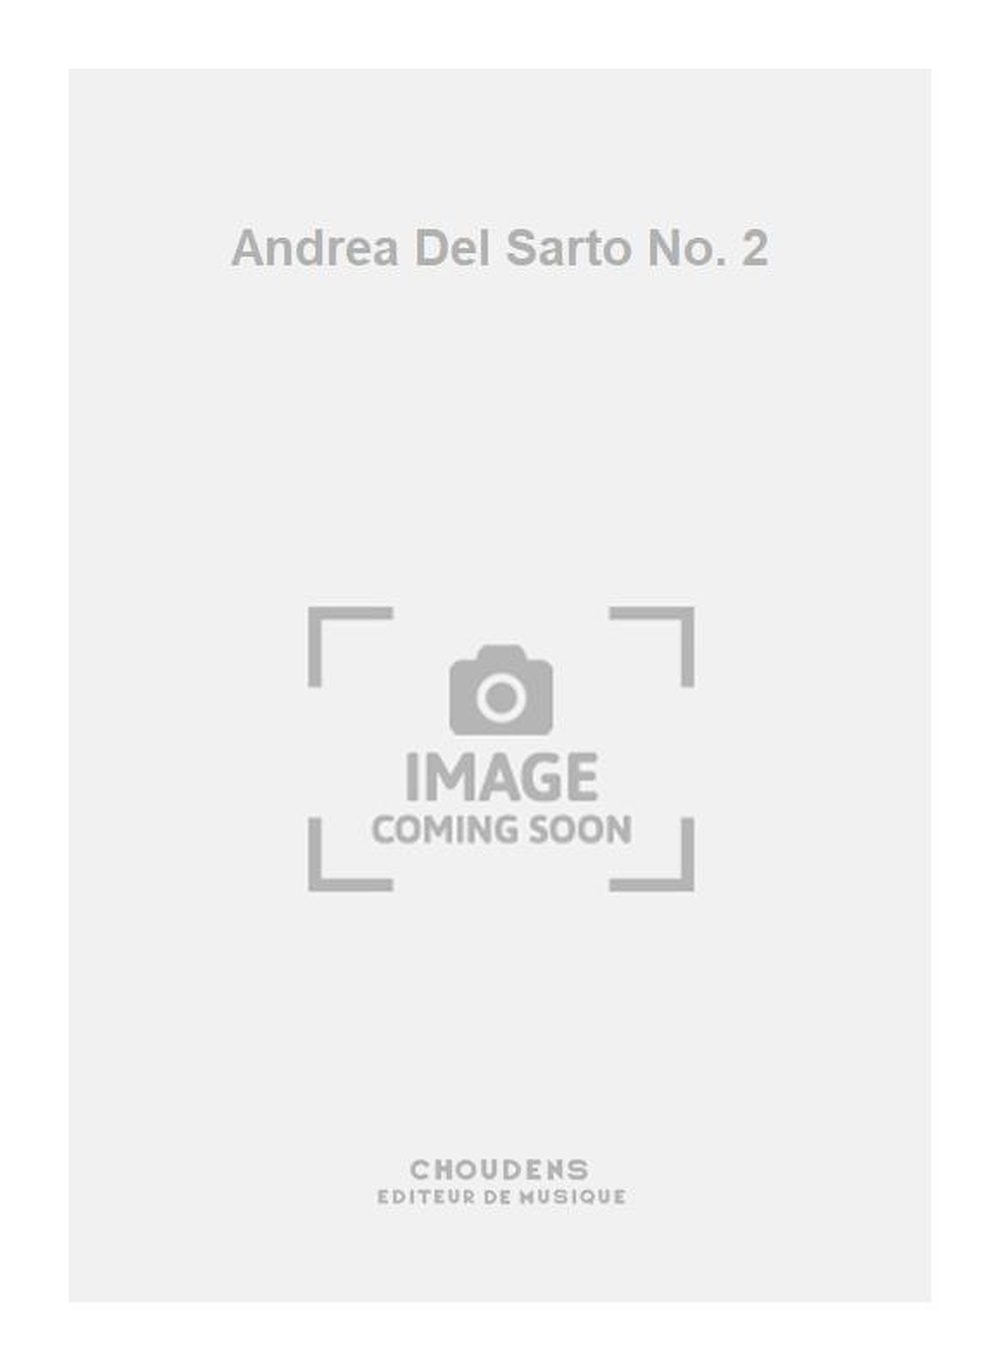 Andrea Del Sarto No. 2